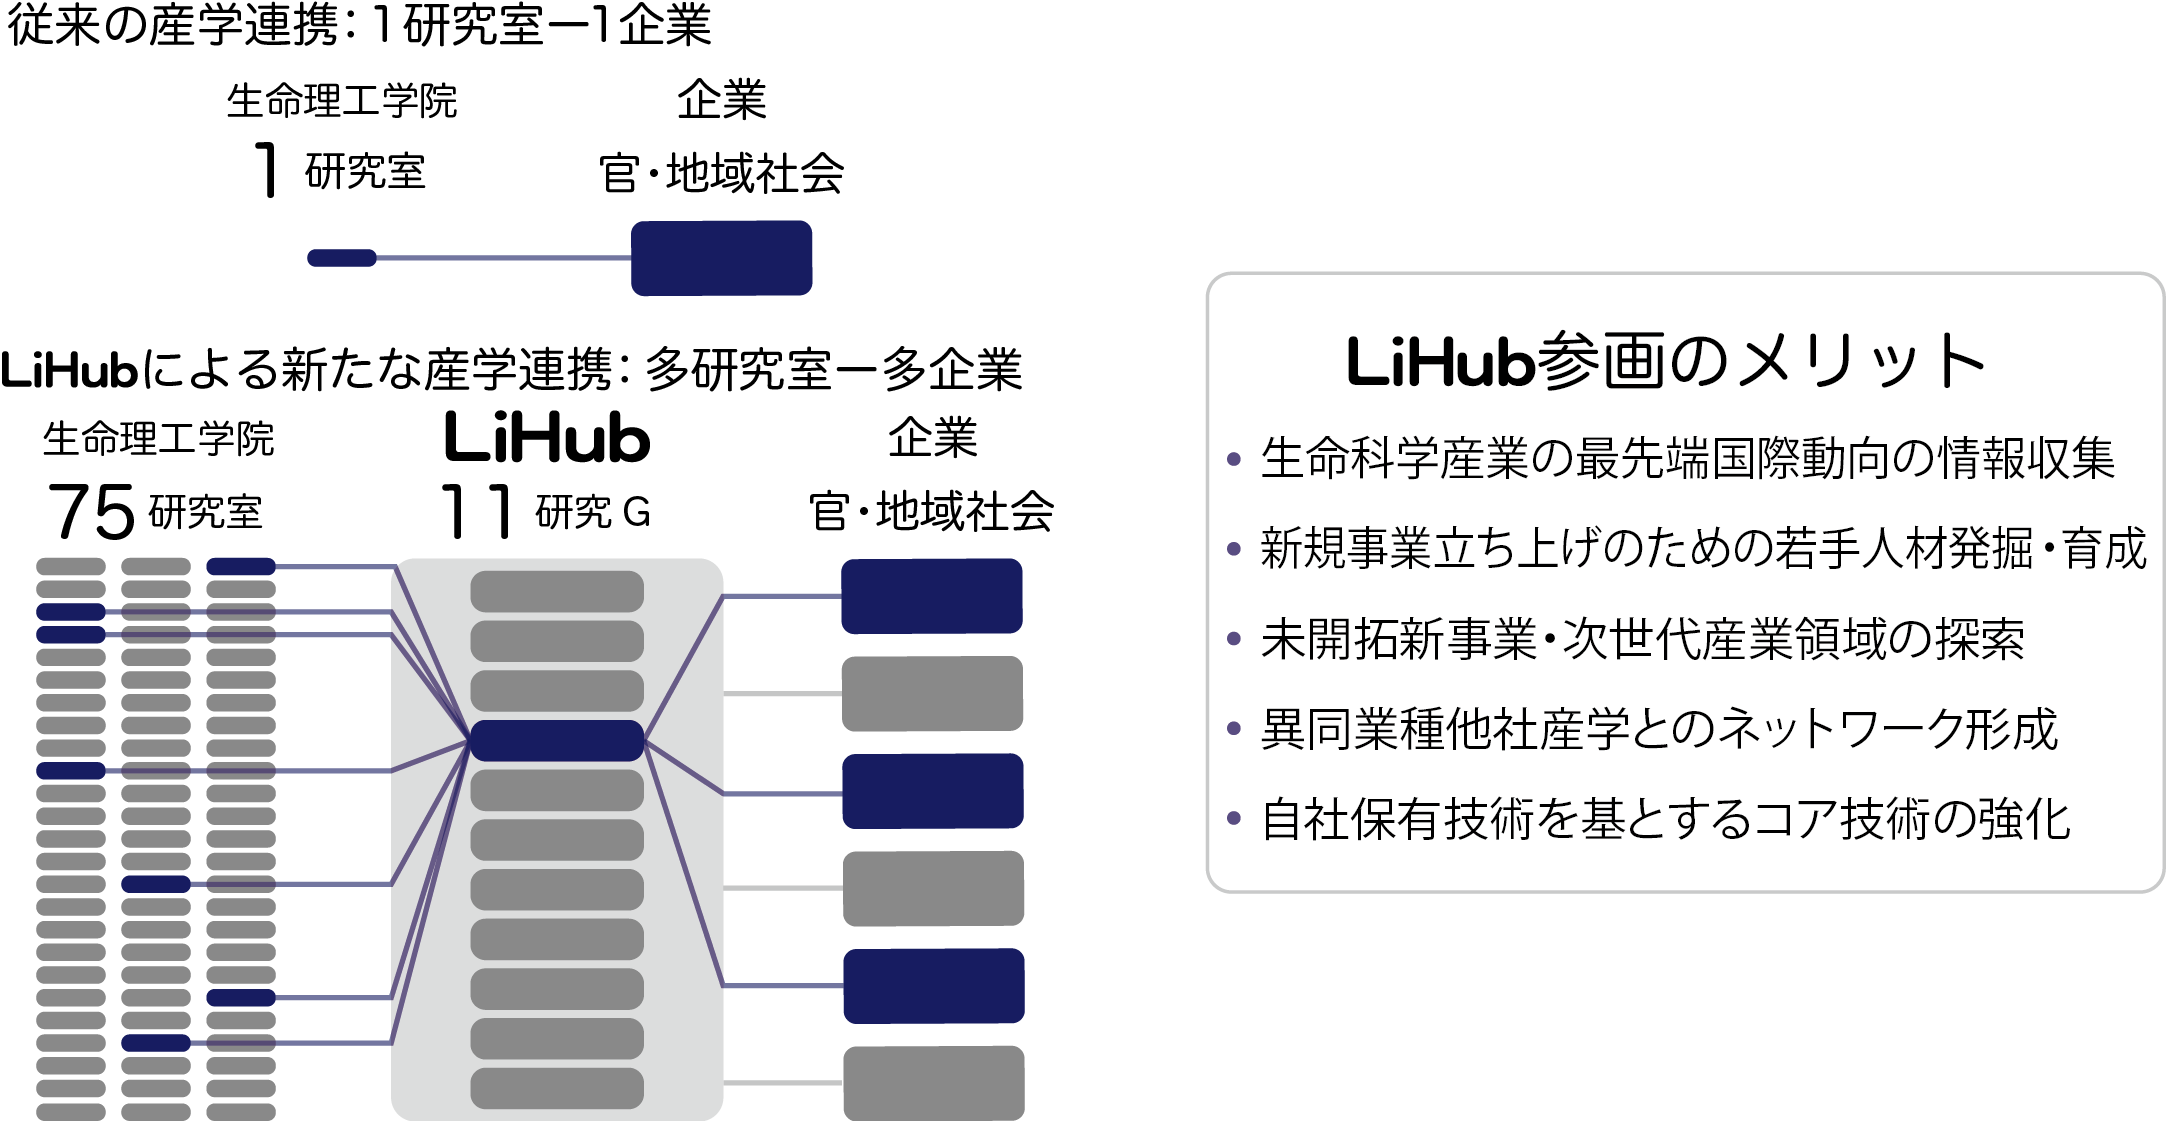 LiHub連携と参画についての図